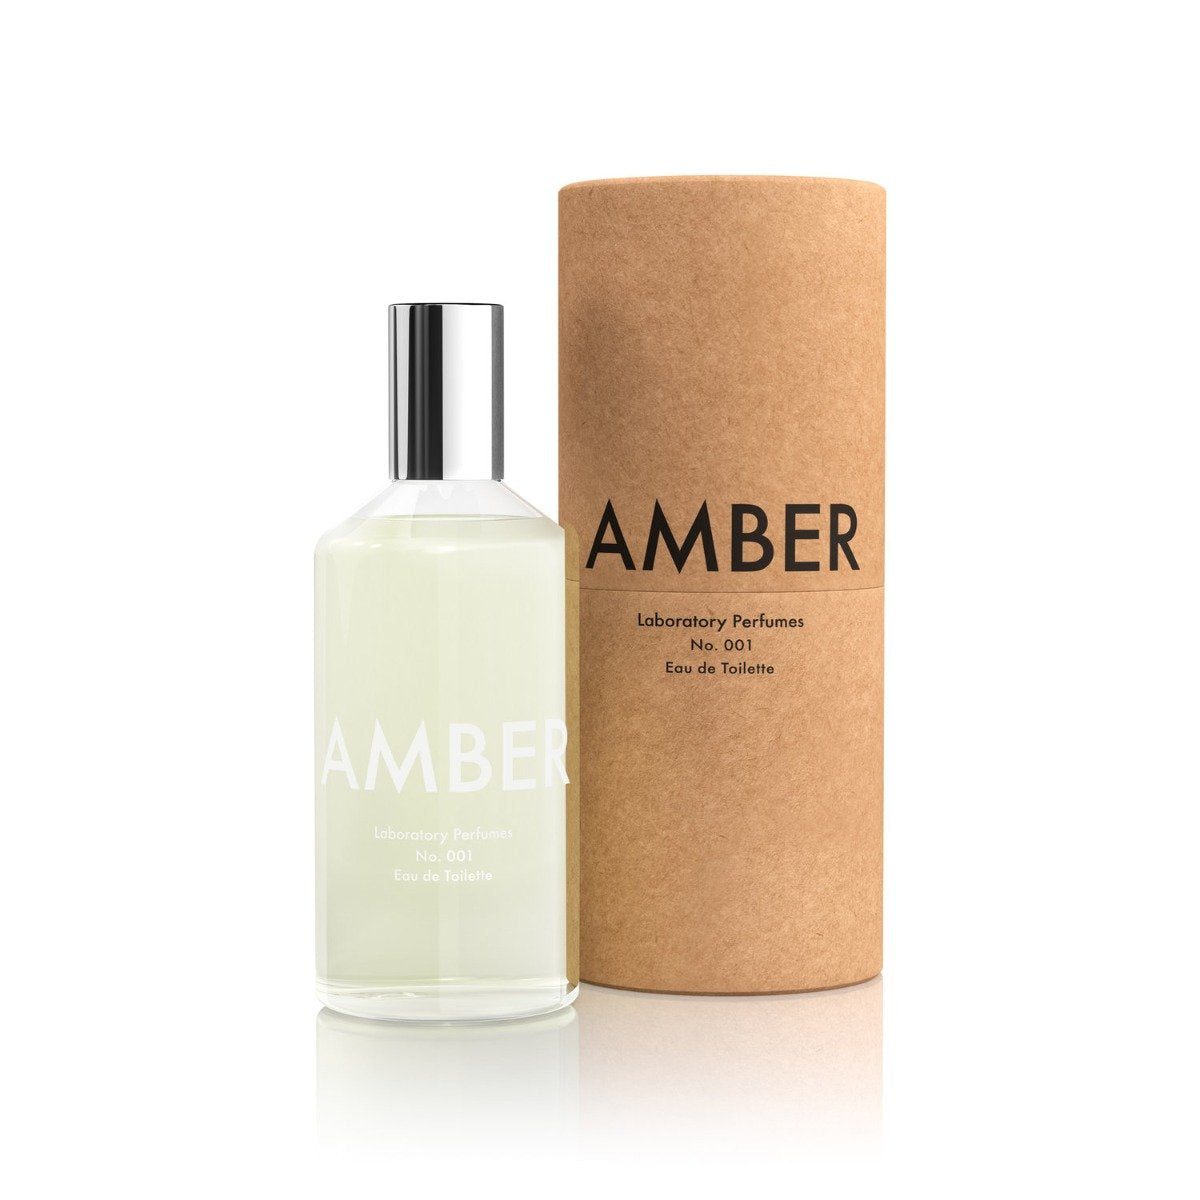 Amber Eau De Toilette (100ml)  Laboratory Perfumes   